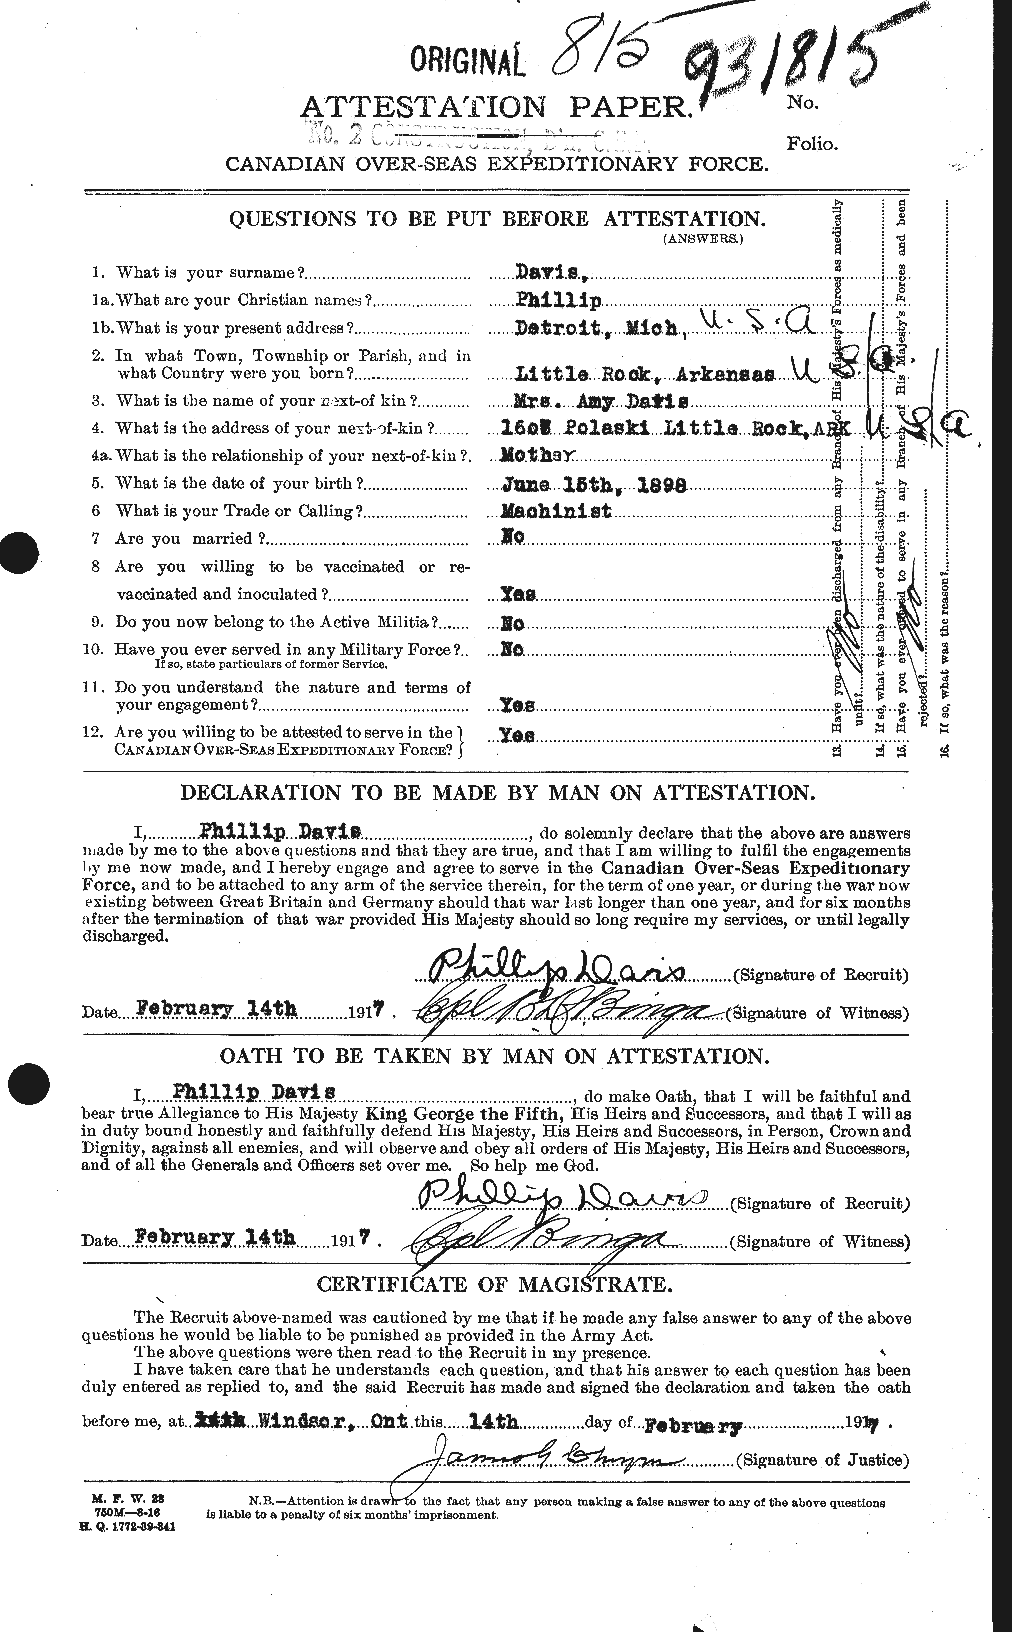 Dossiers du Personnel de la Première Guerre mondiale - CEC 284228a